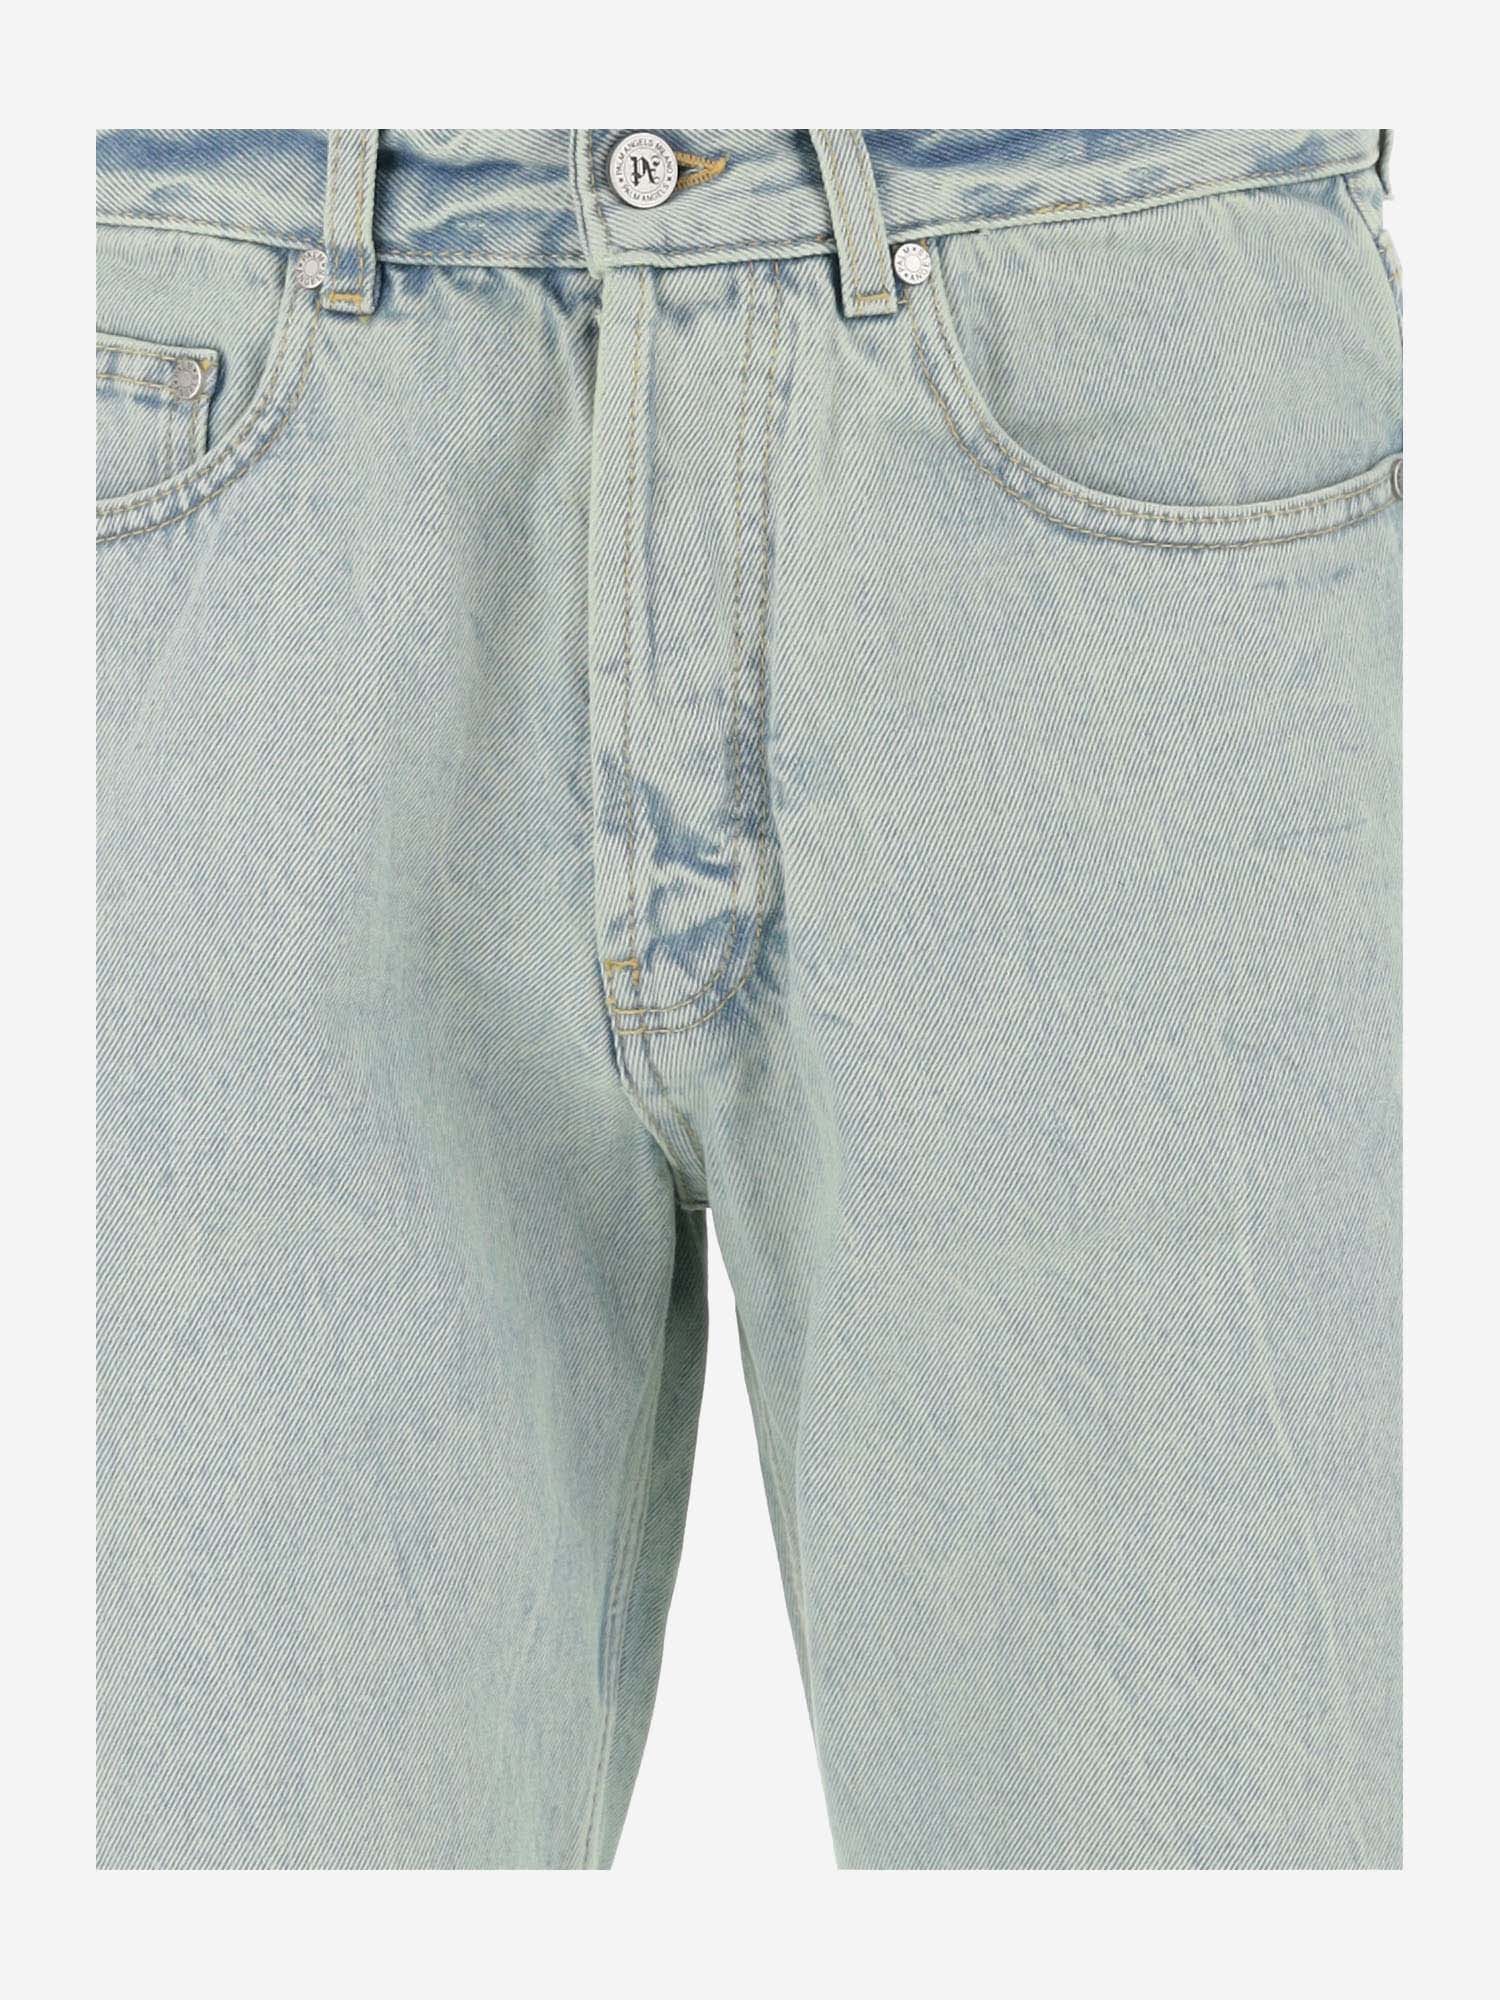 Shop Palm Angels Cotton Denim Jeans